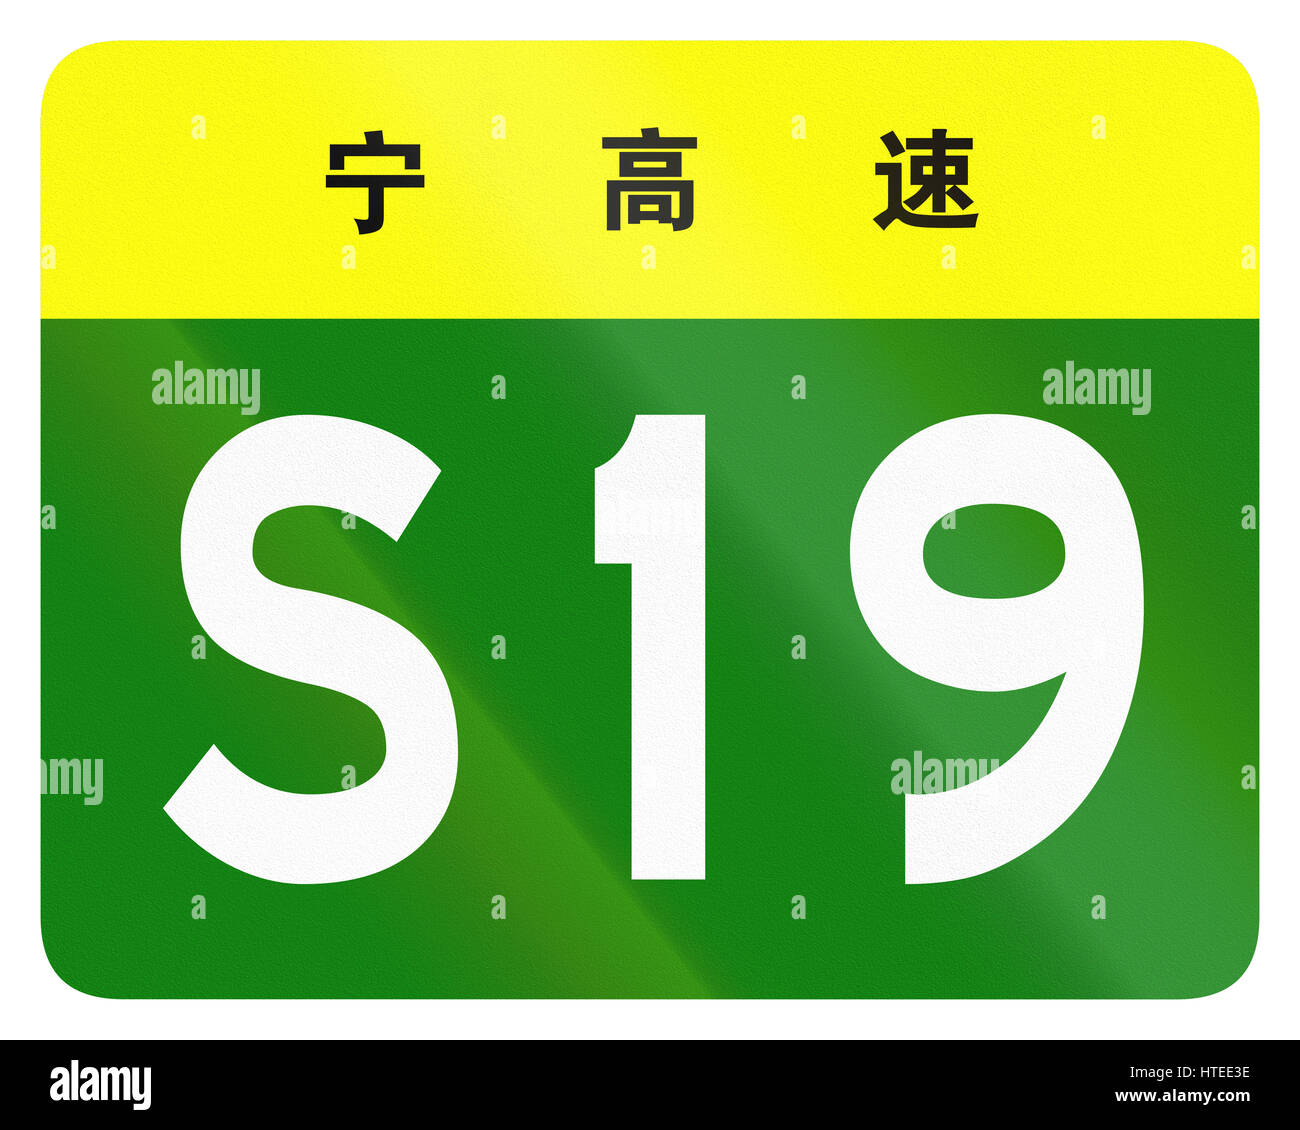 Bouclier de la route route provinciale en Chine - les caractères en haut identifient la province Ningxia. Banque D'Images